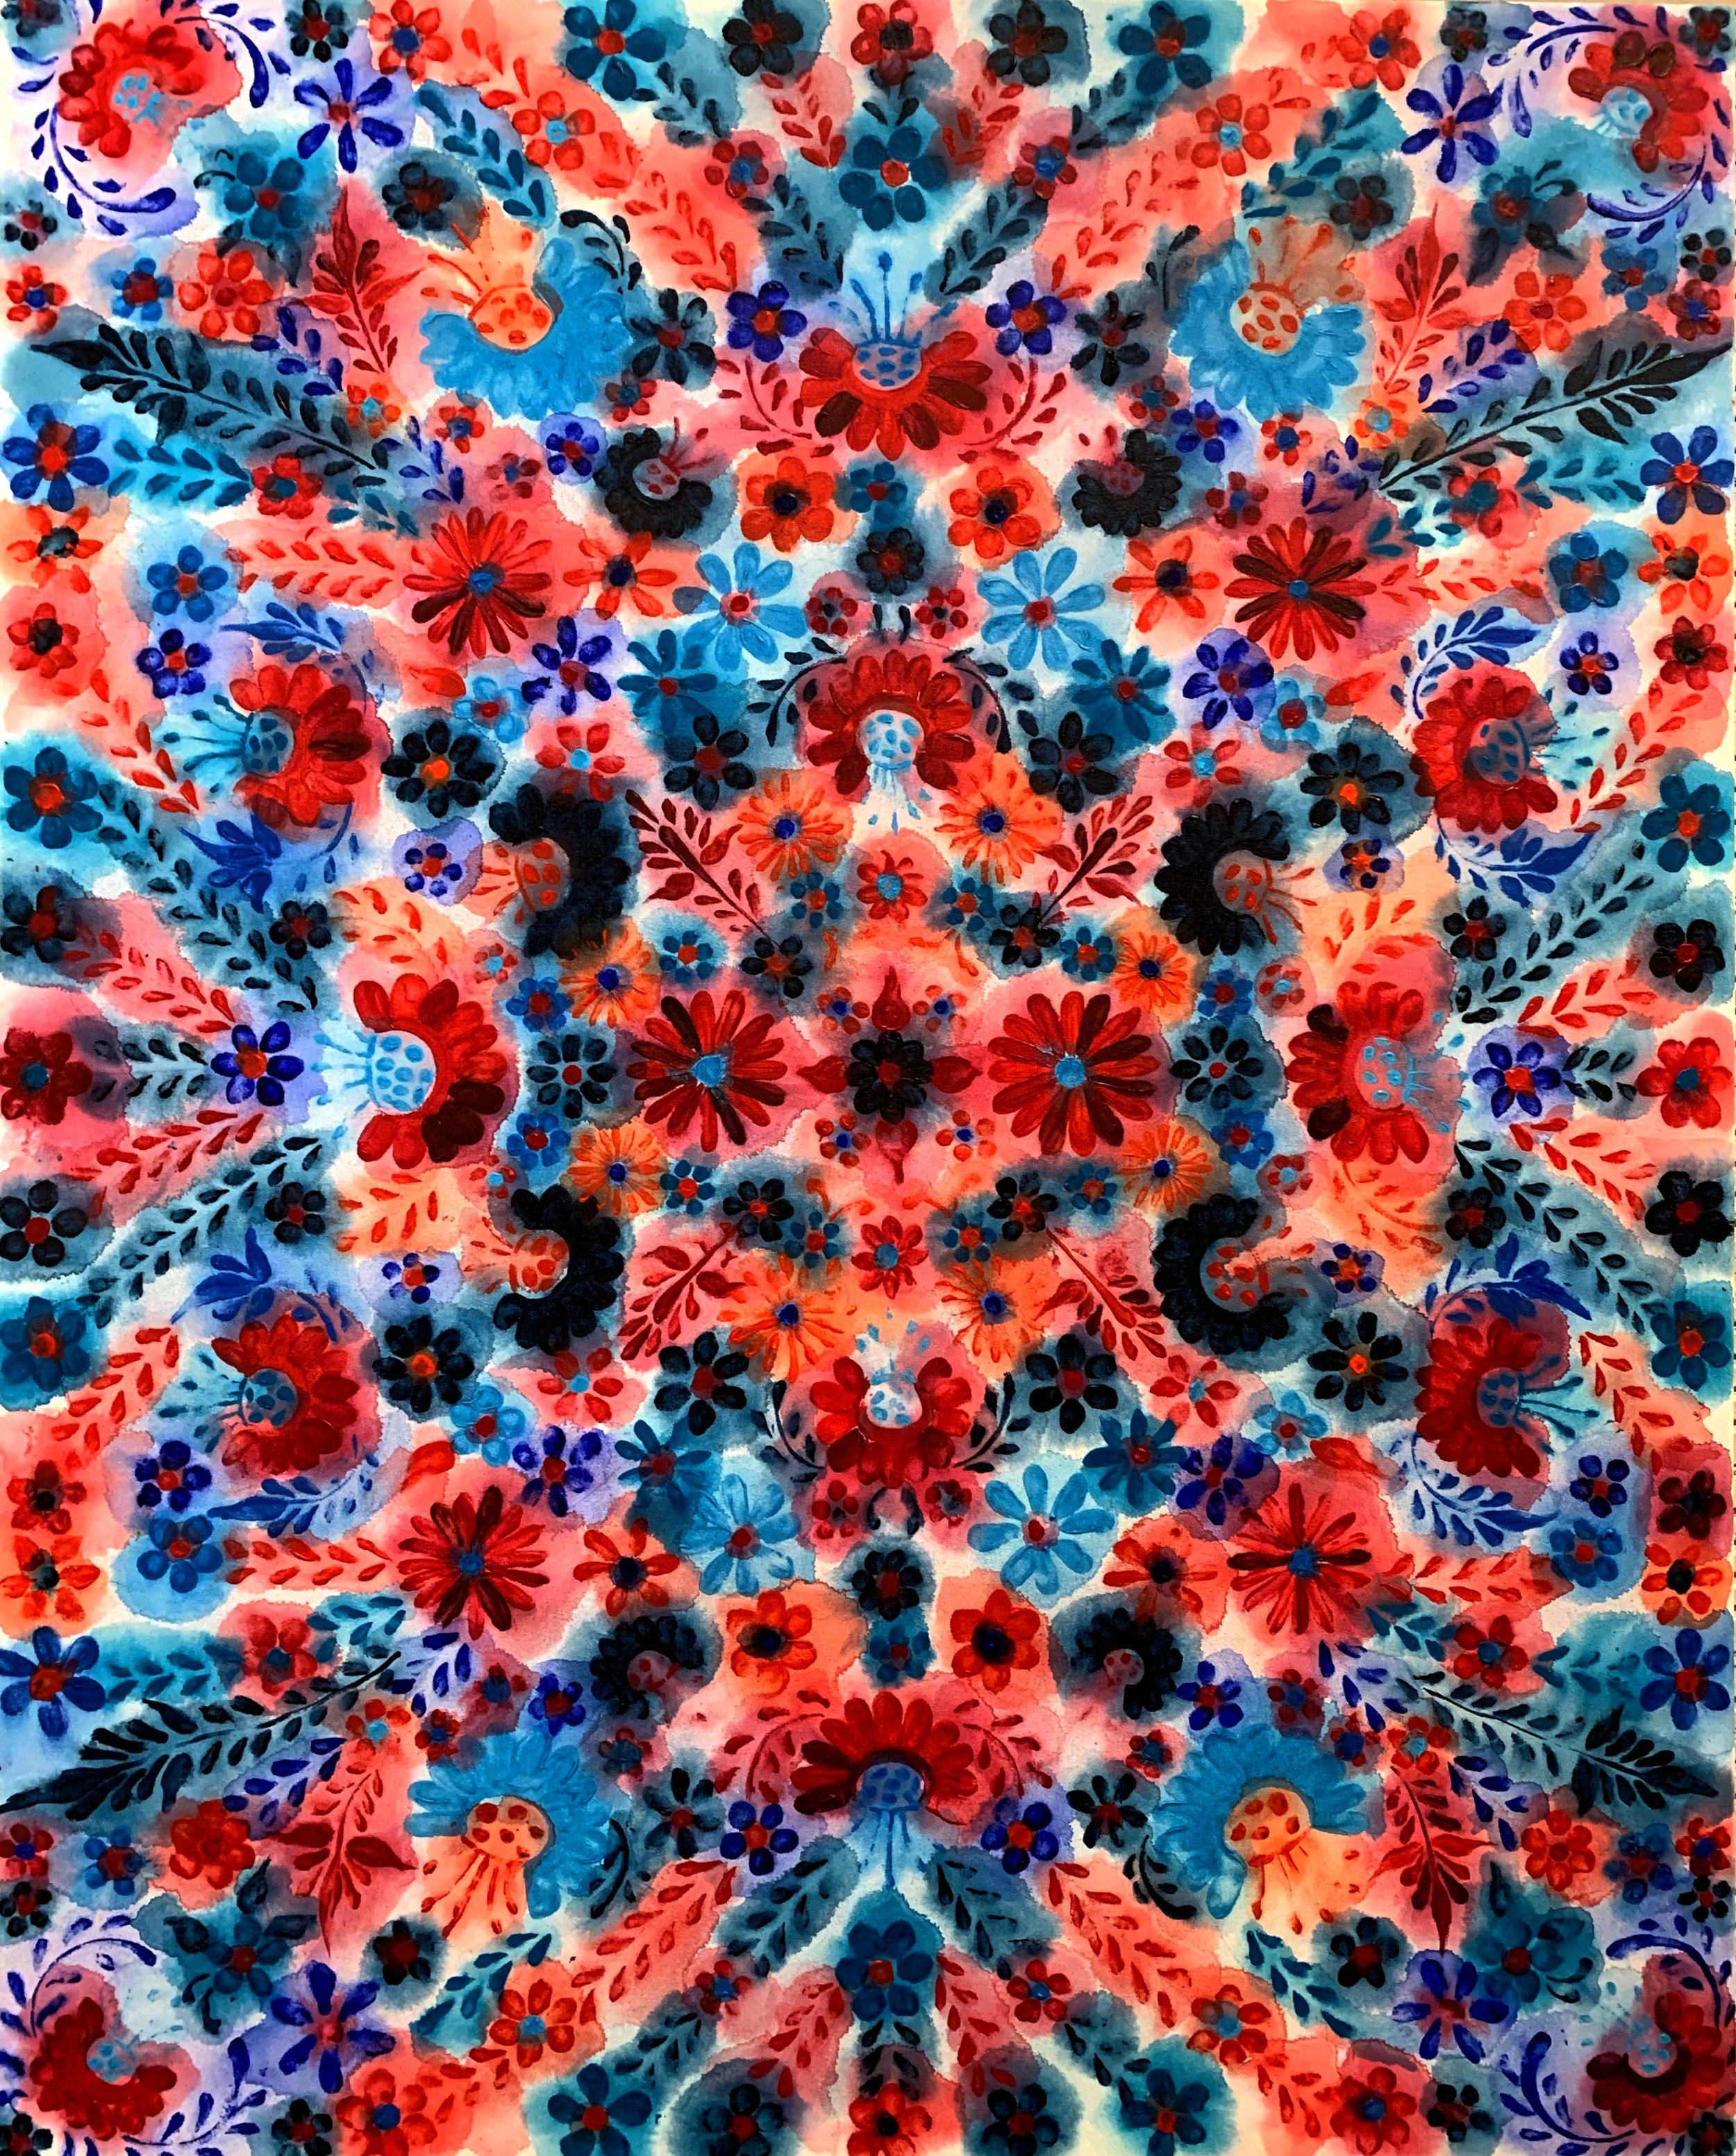 Kaleidoscope Series